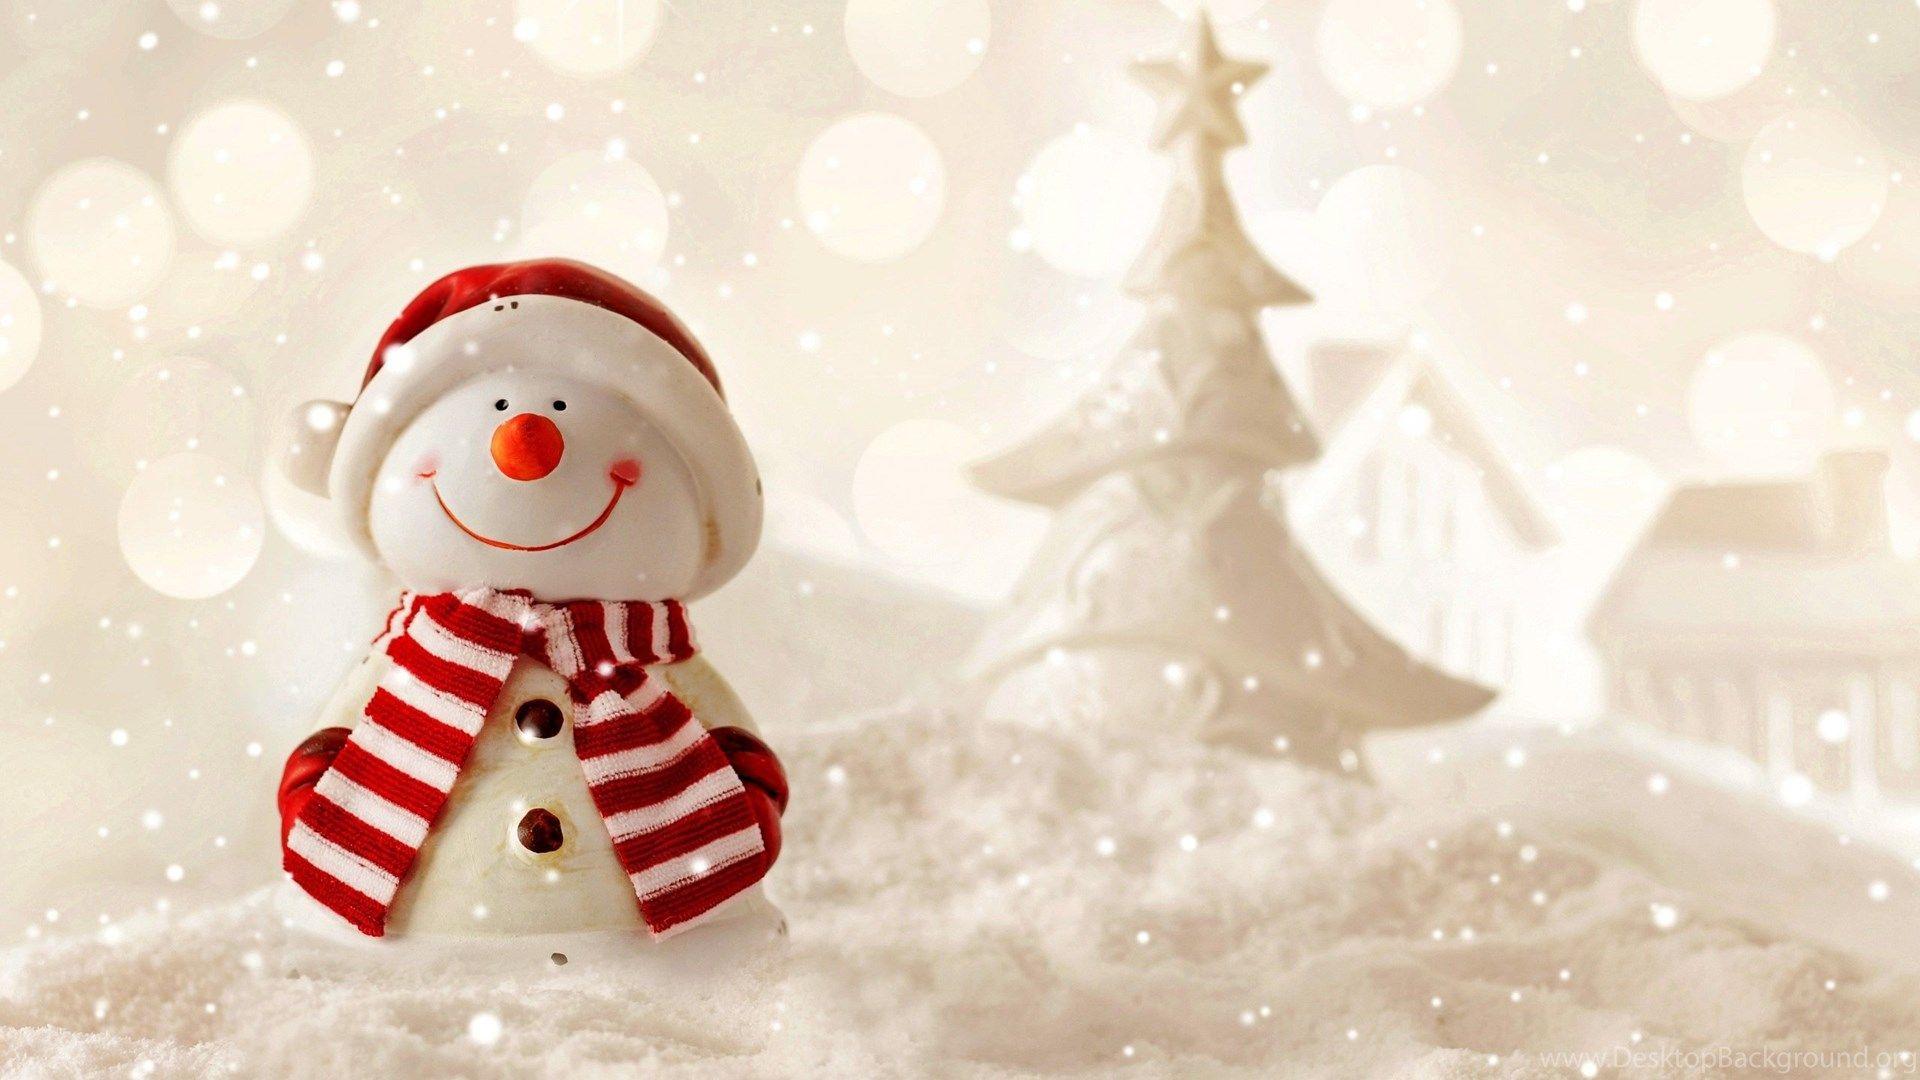 Snowman Art Wallpaper HD Free Download Of Frosty Snowman Desktop